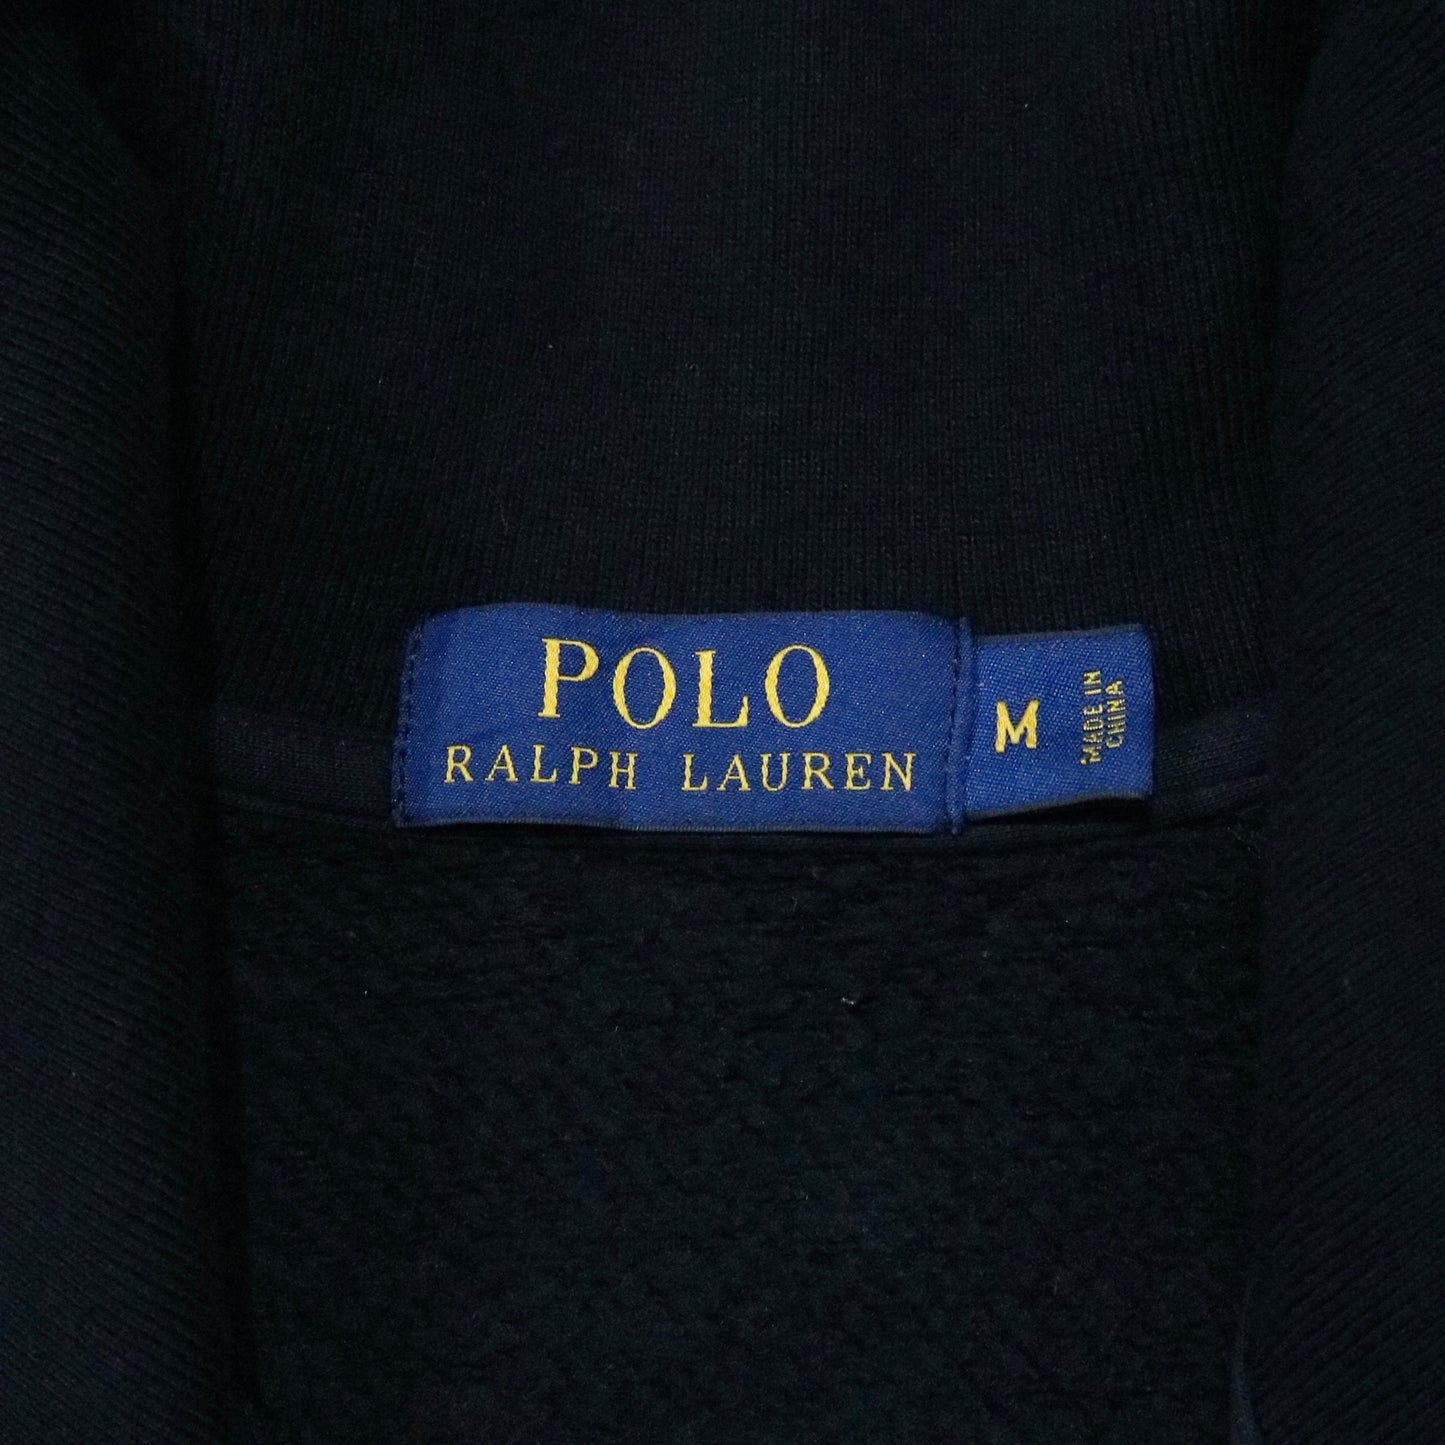 00's "Ralph Lauren" Cotton track jacket